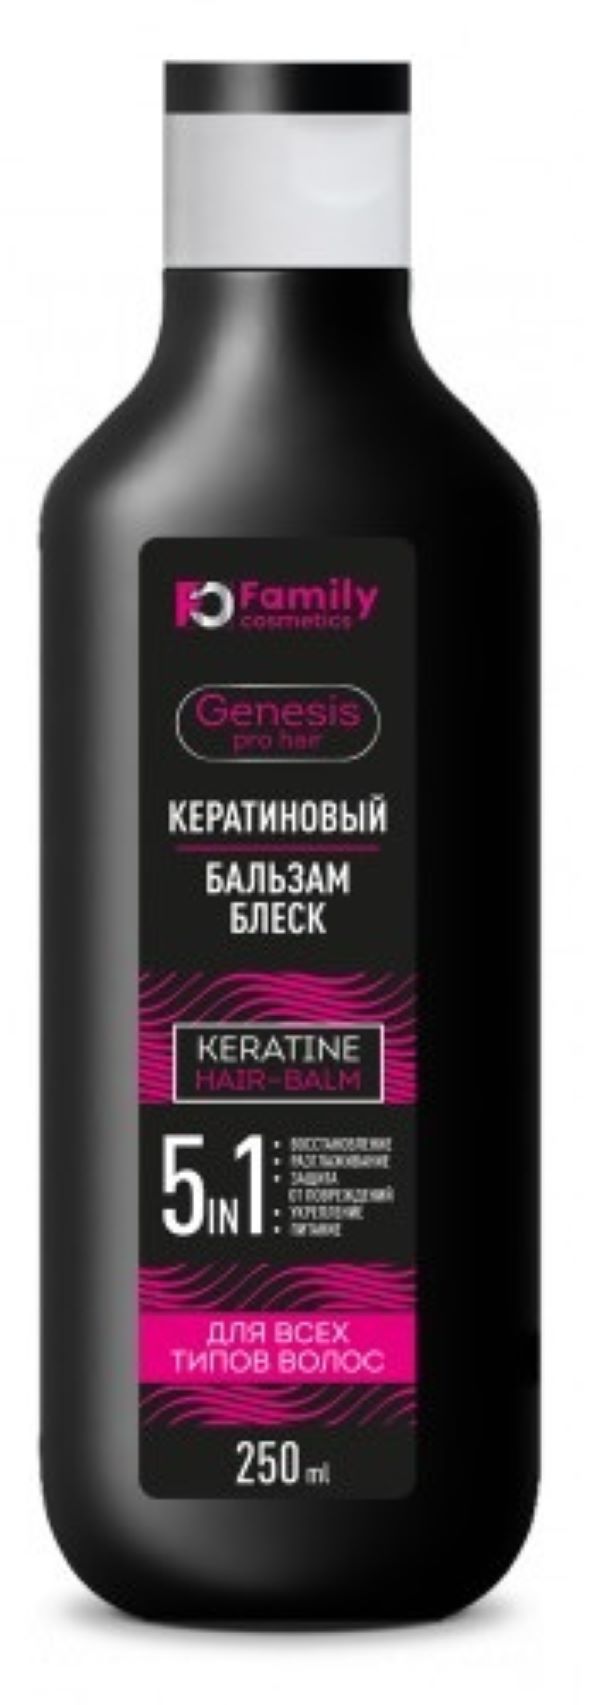 Бальзам Family Cosmetics кератиновый для всех типов волос, 250 мл х 2шт. бальзам для волос с экстрактом авокадо beauty family